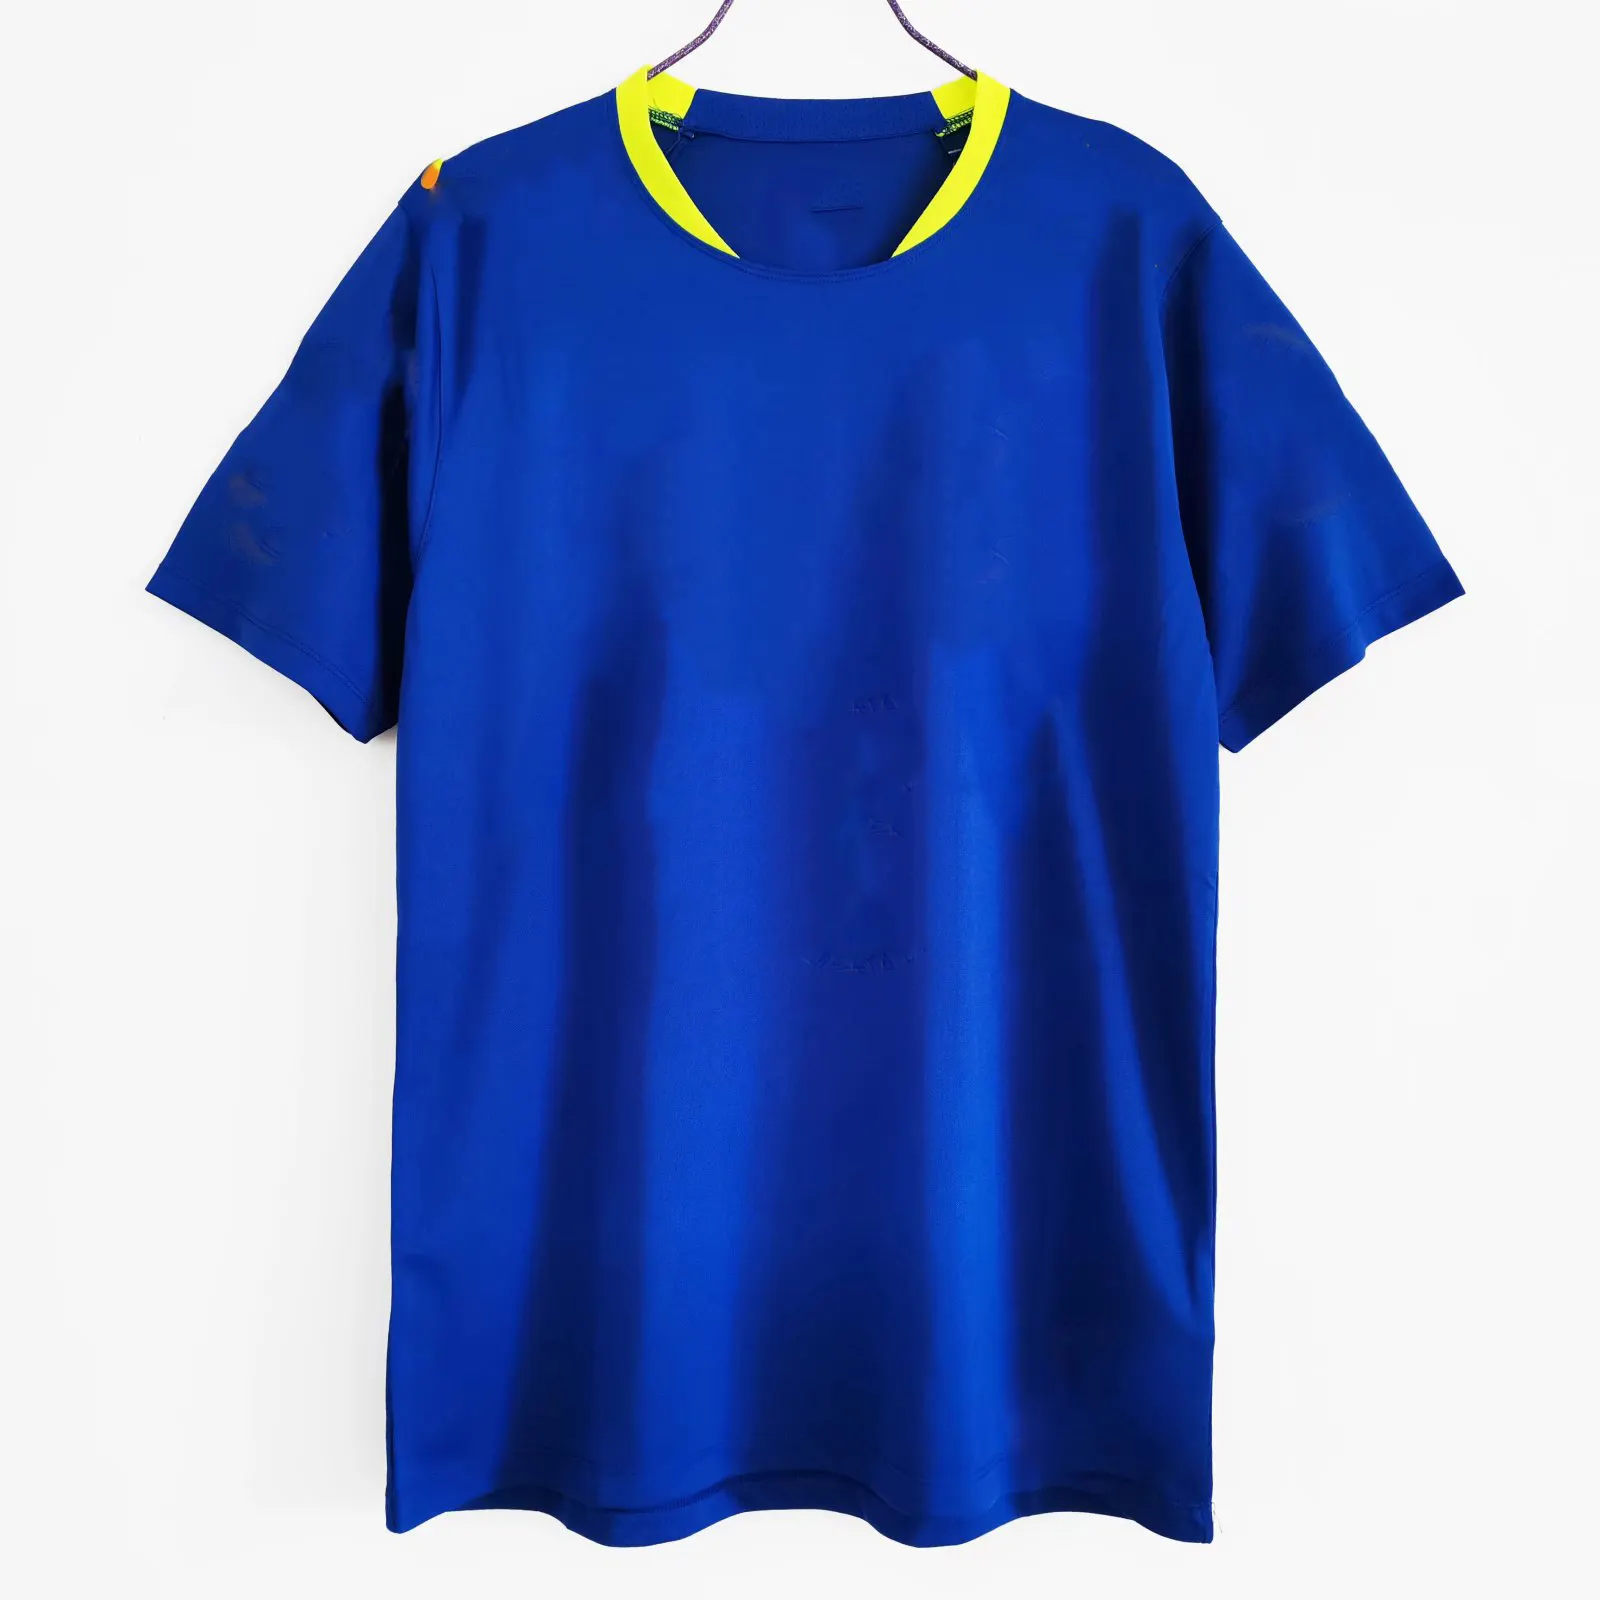 เสื้อฟุตบอลพิมพ์ซับลิเมชันย้อนยุคเสื้อทีมประเทศบราซิลแขนสั้นและยาวเสื้อฟุตบอลสไตล์เก่า